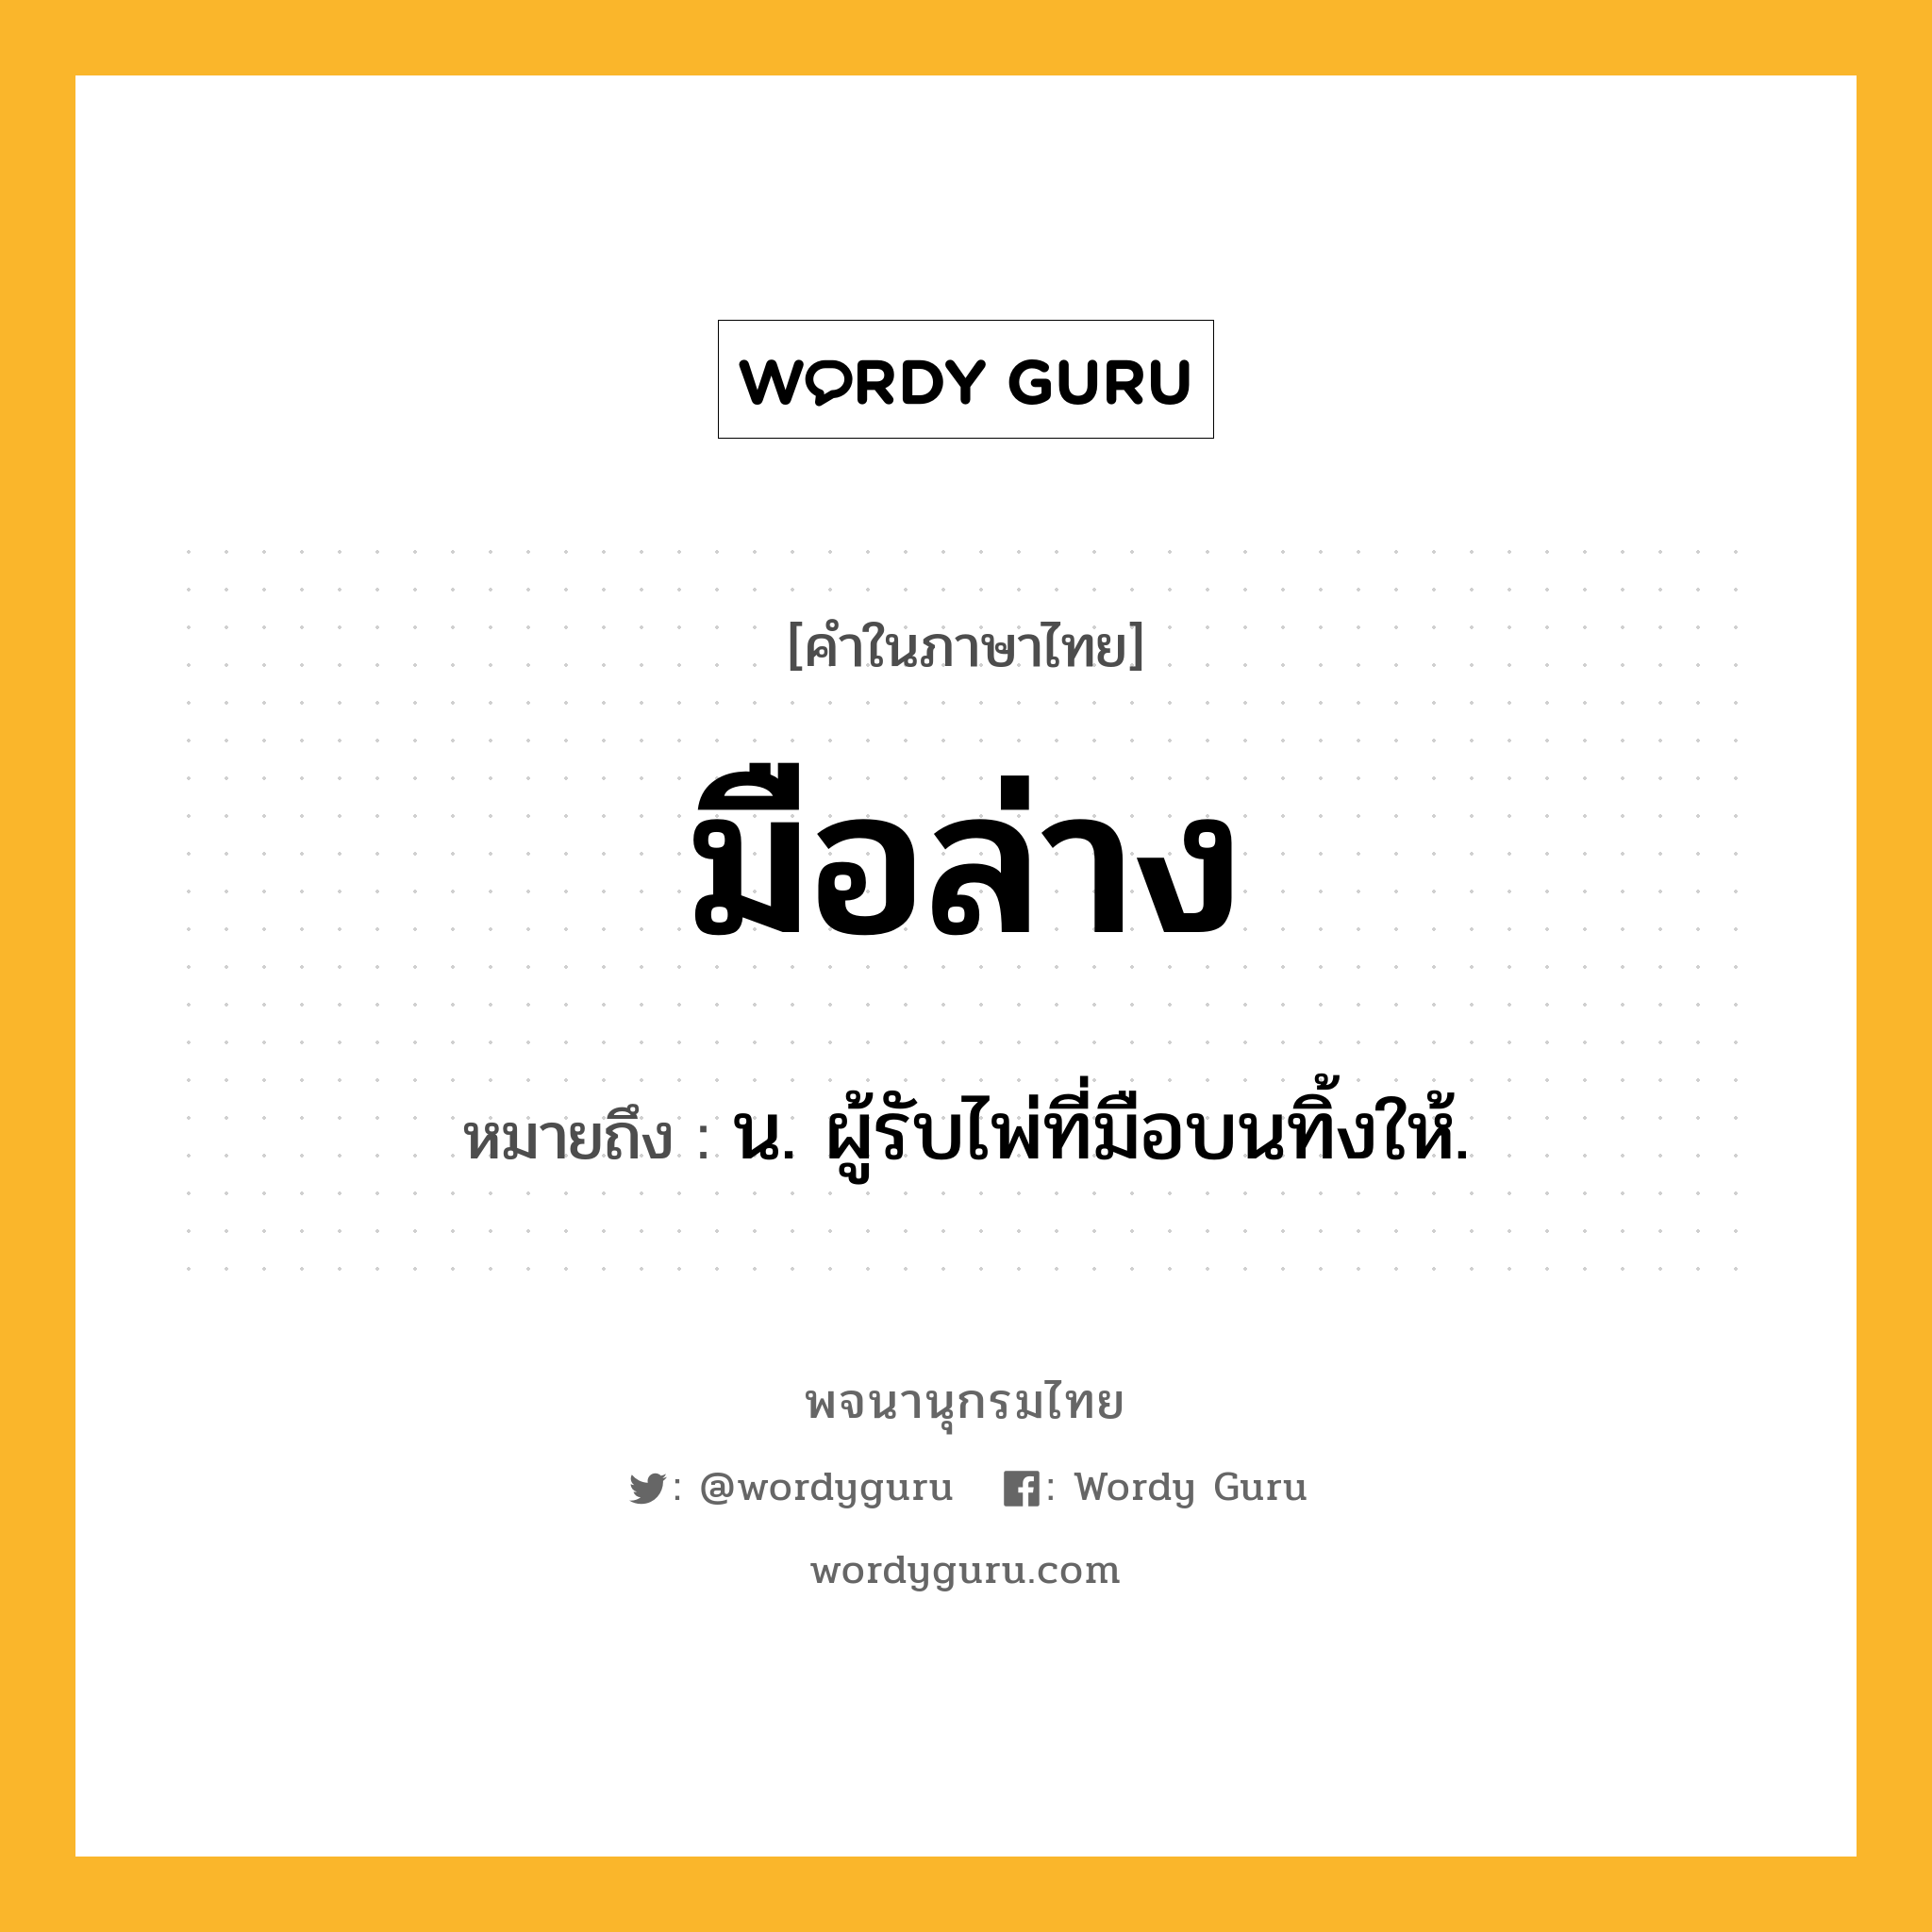 มือล่าง หมายถึงอะไร?, คำในภาษาไทย มือล่าง หมายถึง น. ผู้รับไพ่ที่มือบนทิ้งให้.